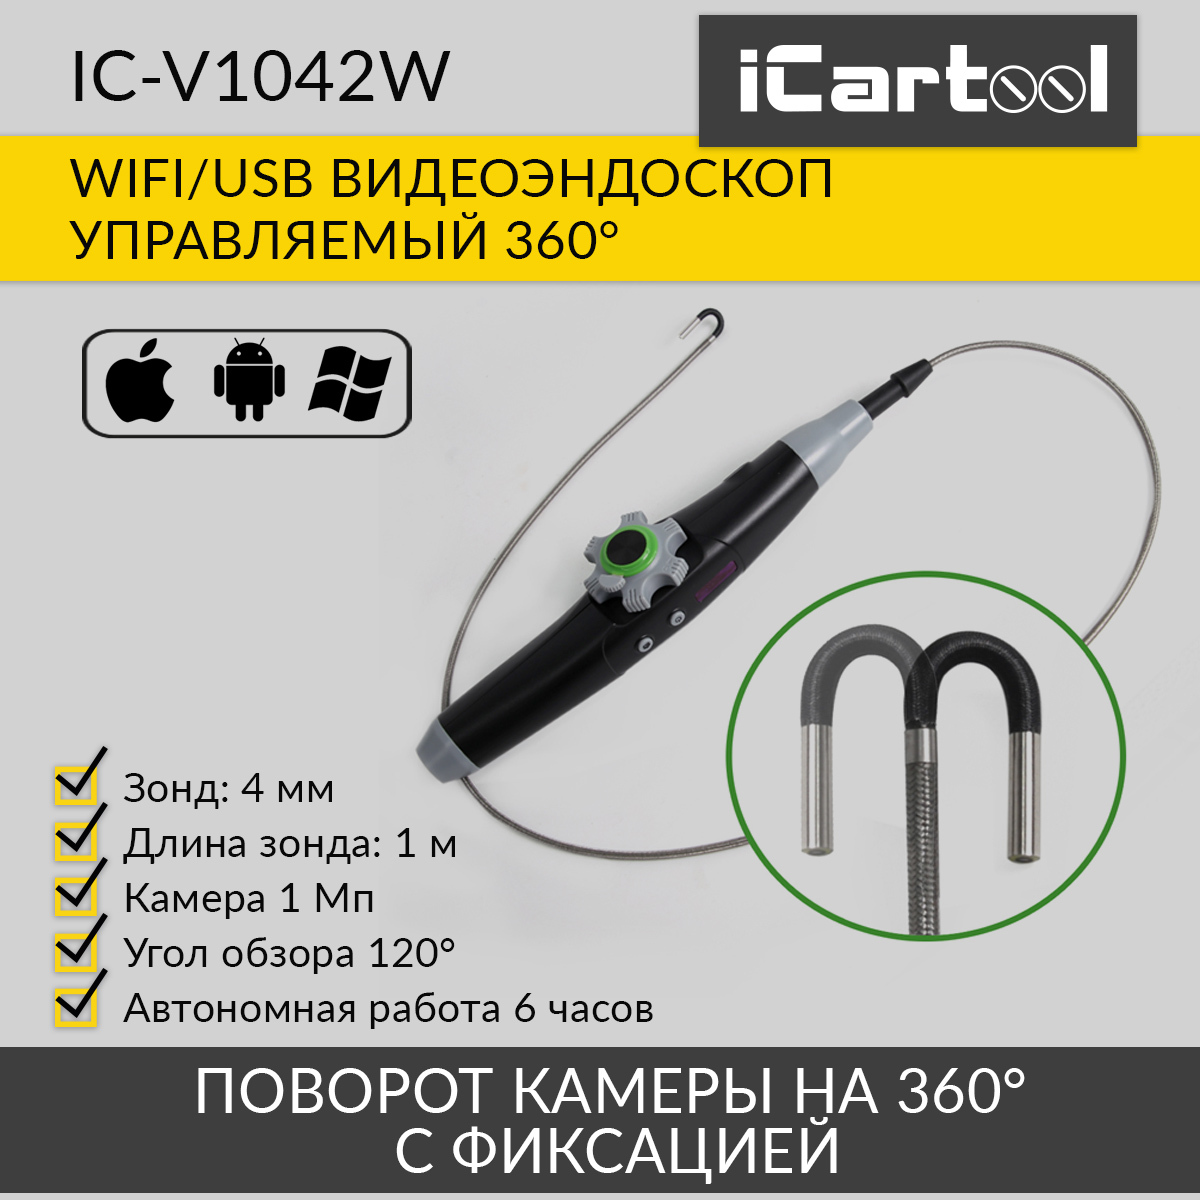 Видеоэндоскоп управляемый iCartool IC-V1042W WIFI/USB, 1Мп, 1168х720, 1м, 4мм зонд, 360° управляемый видеоэндоскоп icartool